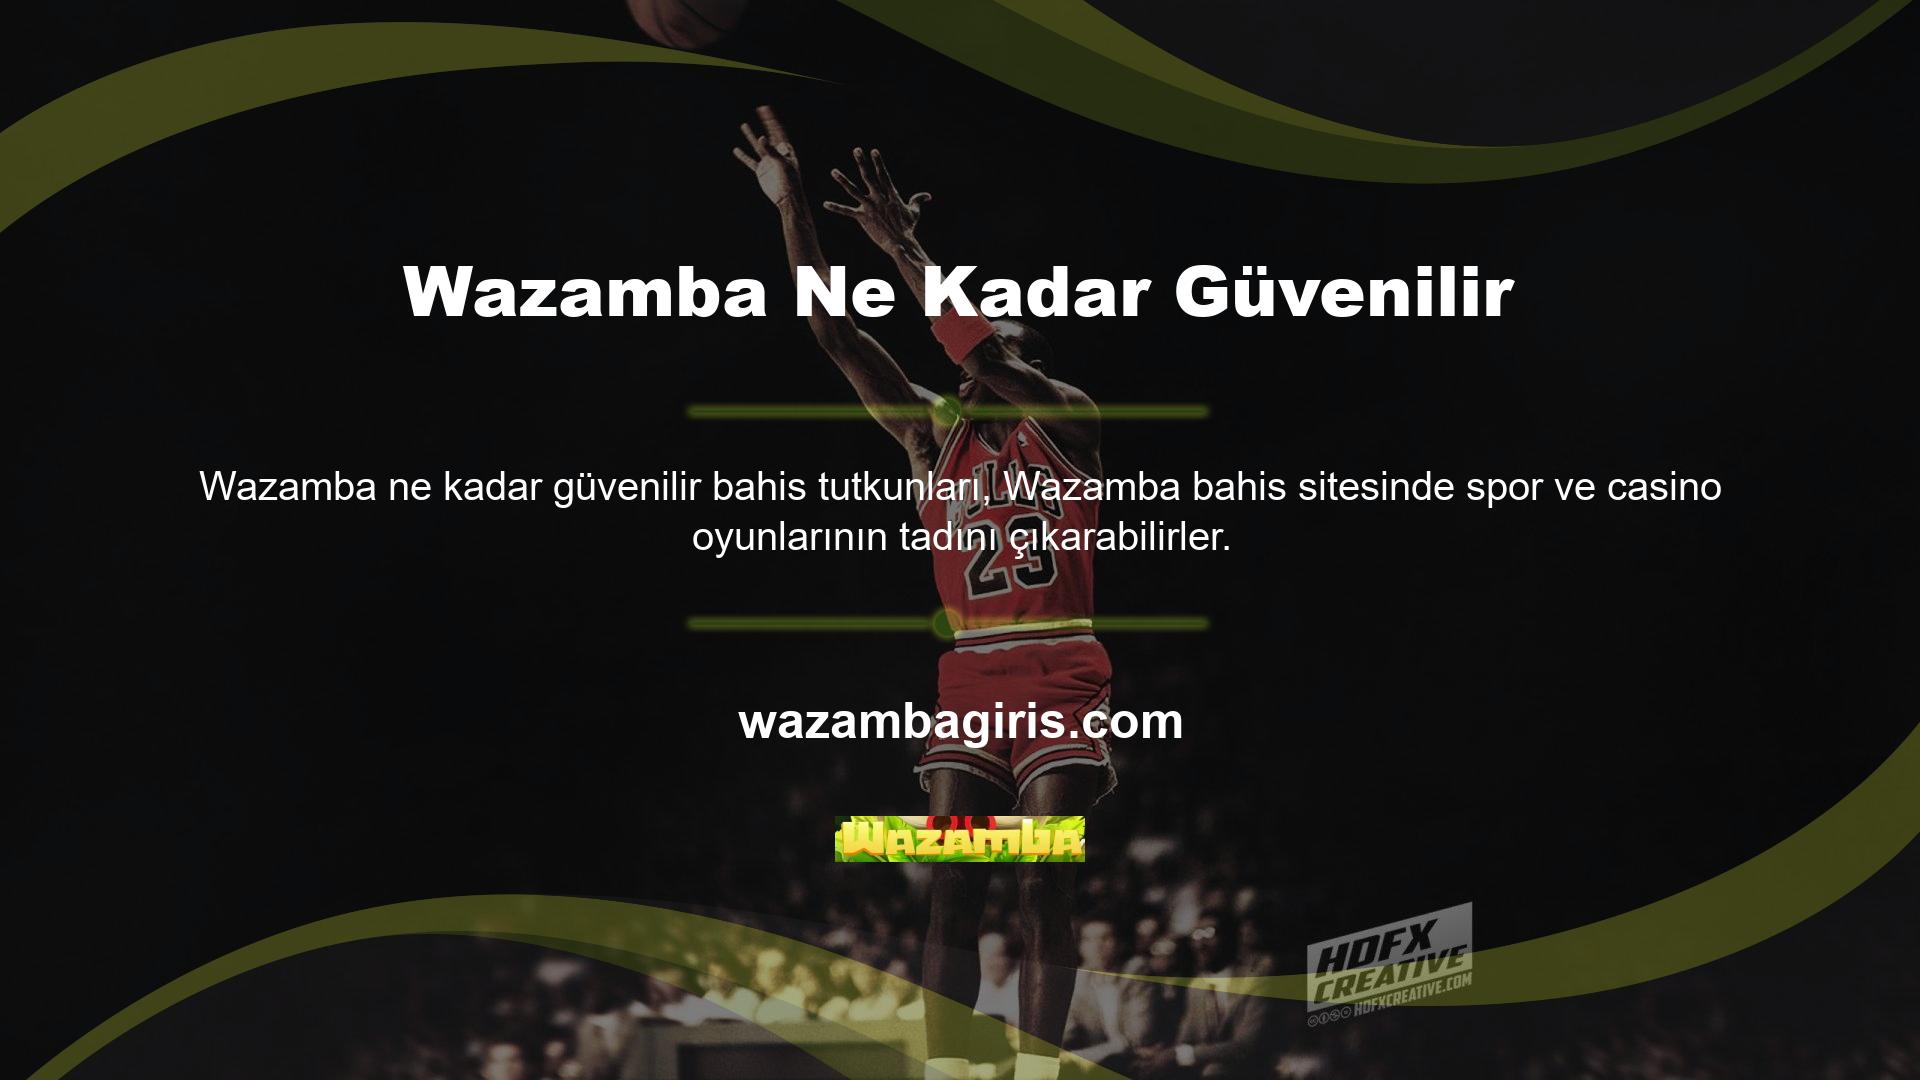 İnternet mesaj panolarında Wazamba canlı bahis ve casino oyun siteleri hakkında birçok şikayet ve yorum yapılmıştır